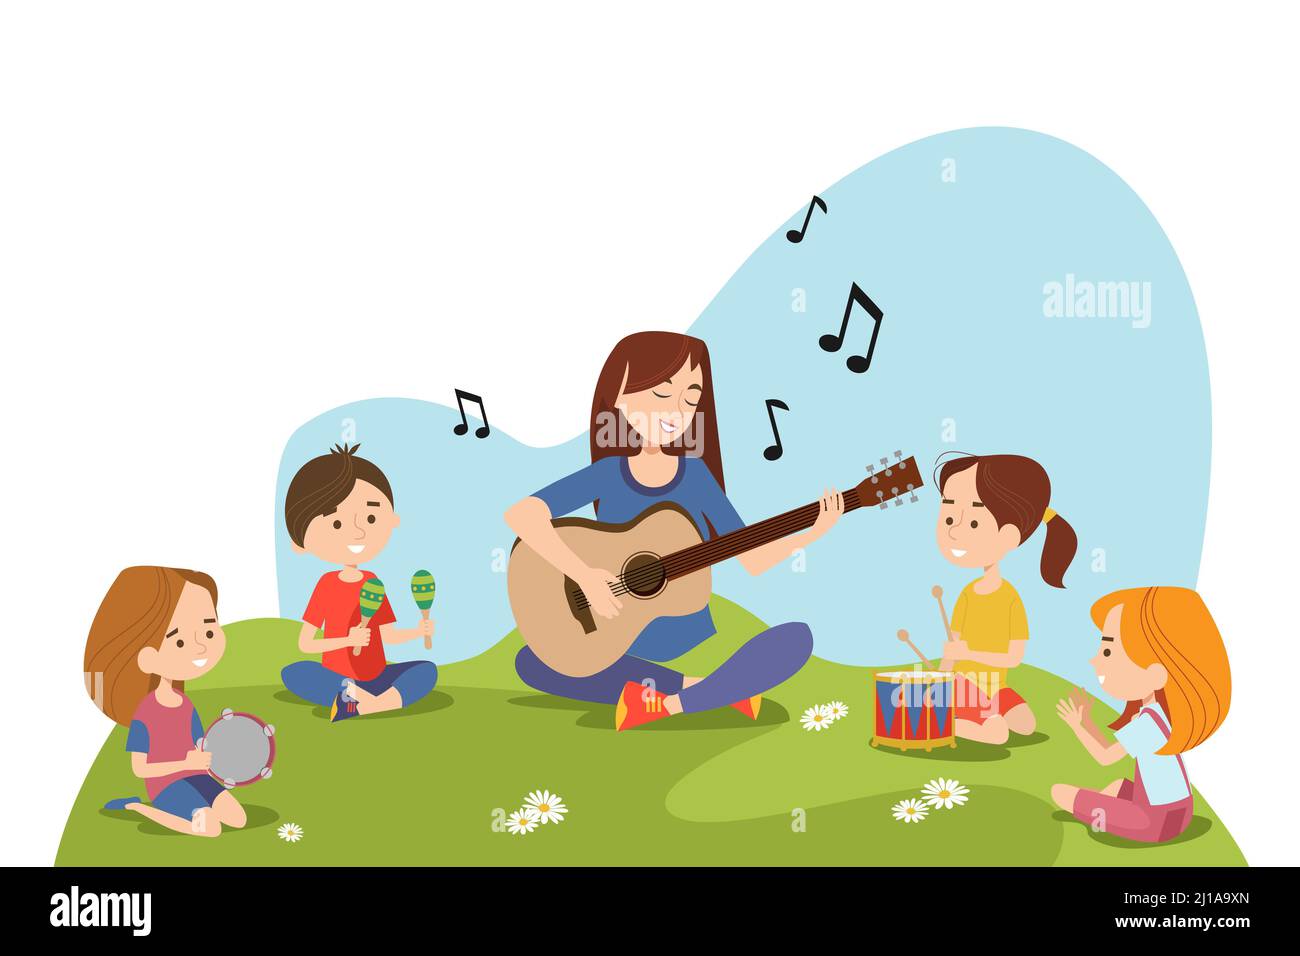 Kinder und Lehrer sitzen auf Gras und spielen gemeinsam Musikinstrumente. Kinder genießen Musikunterricht im Freien. Kita-Aktivitäten und musikalische educ Stock Vektor